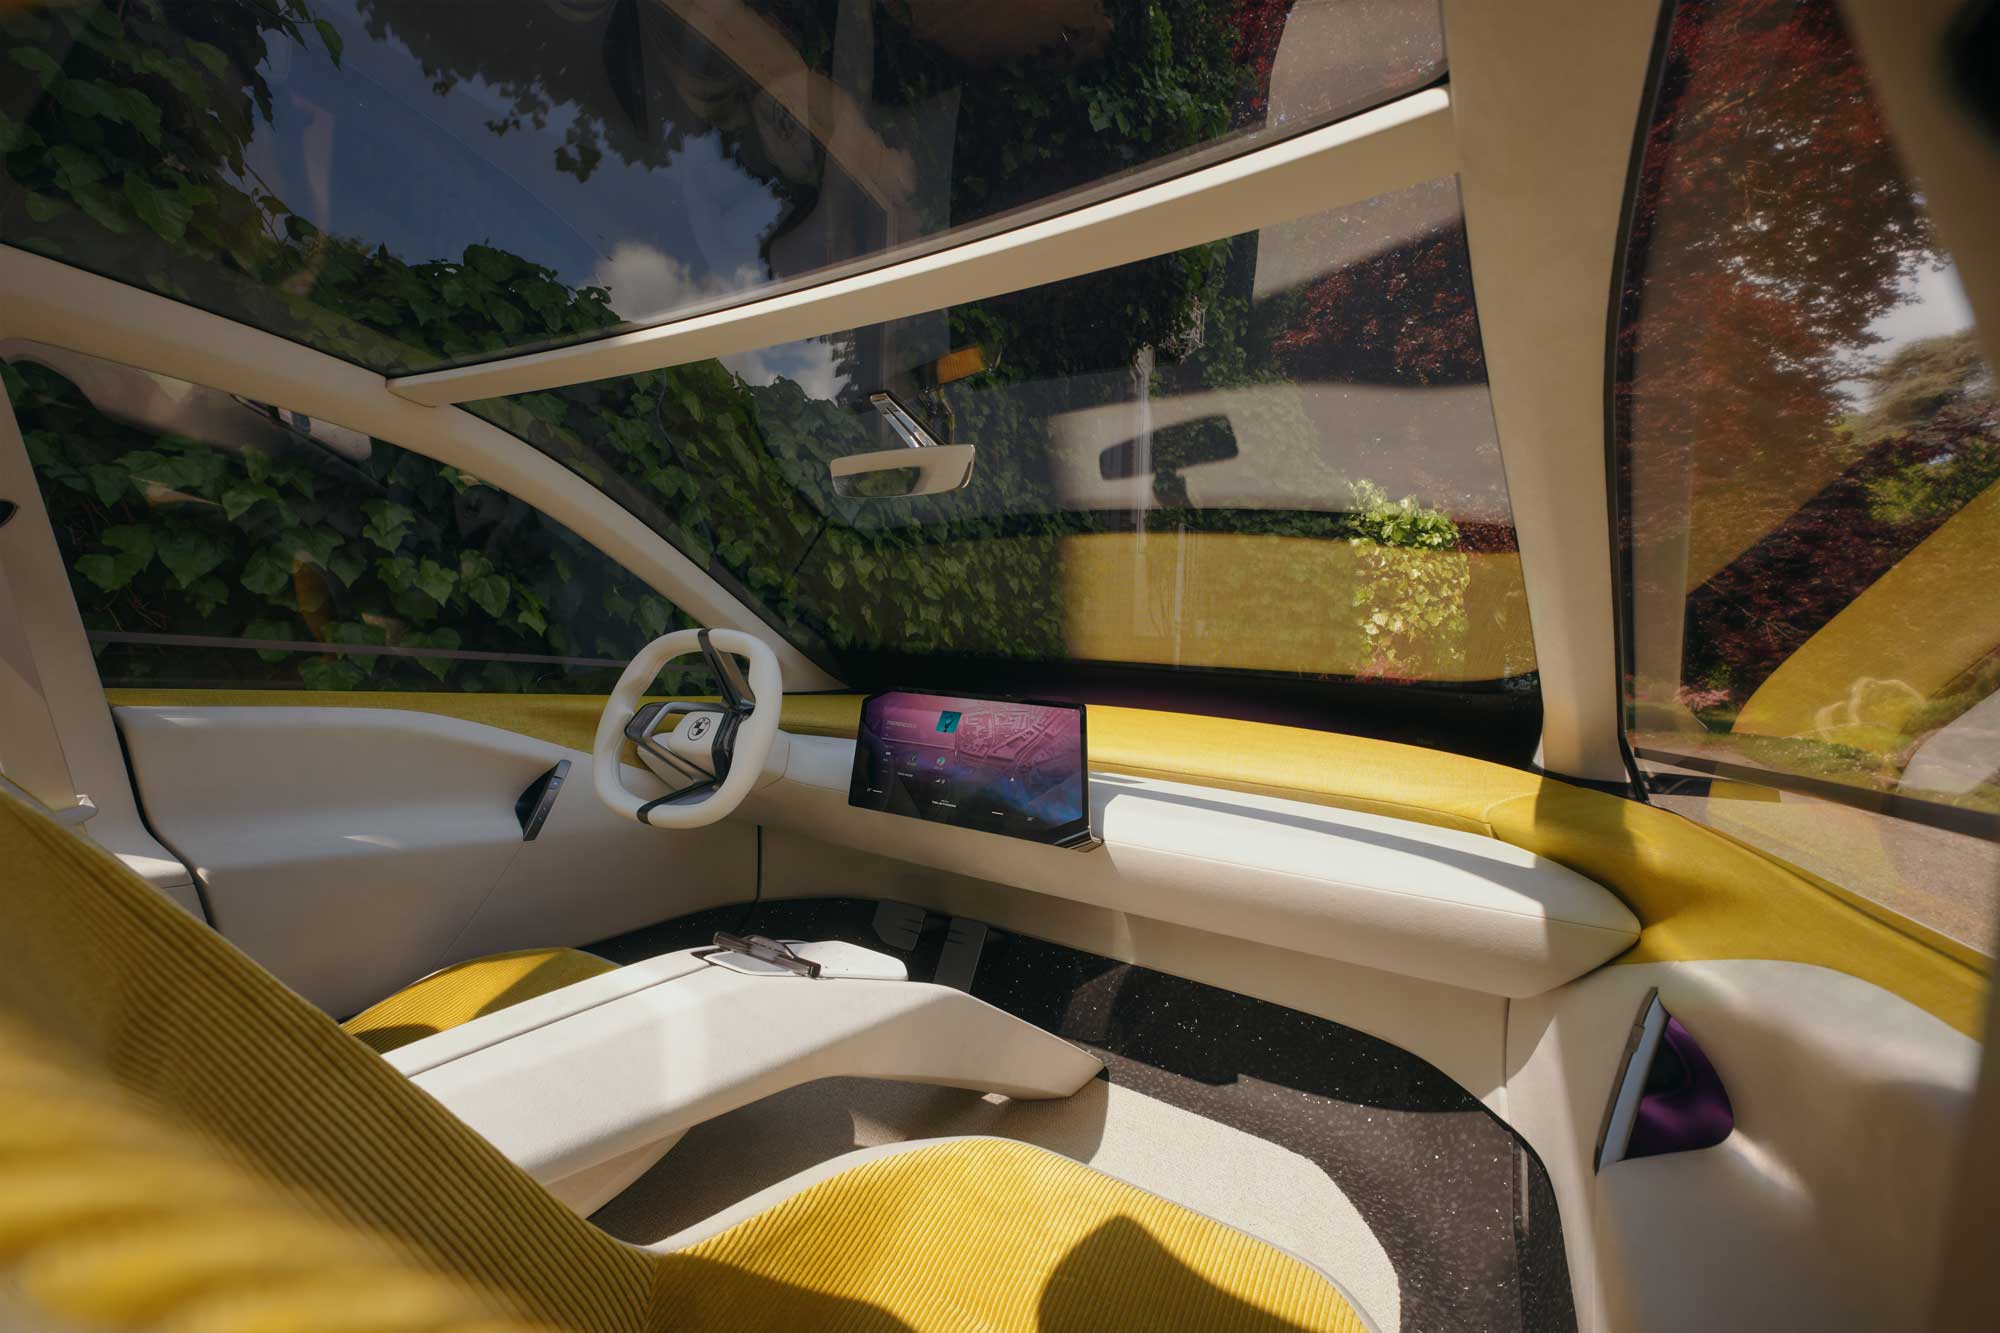 BMW New Class concept car interior